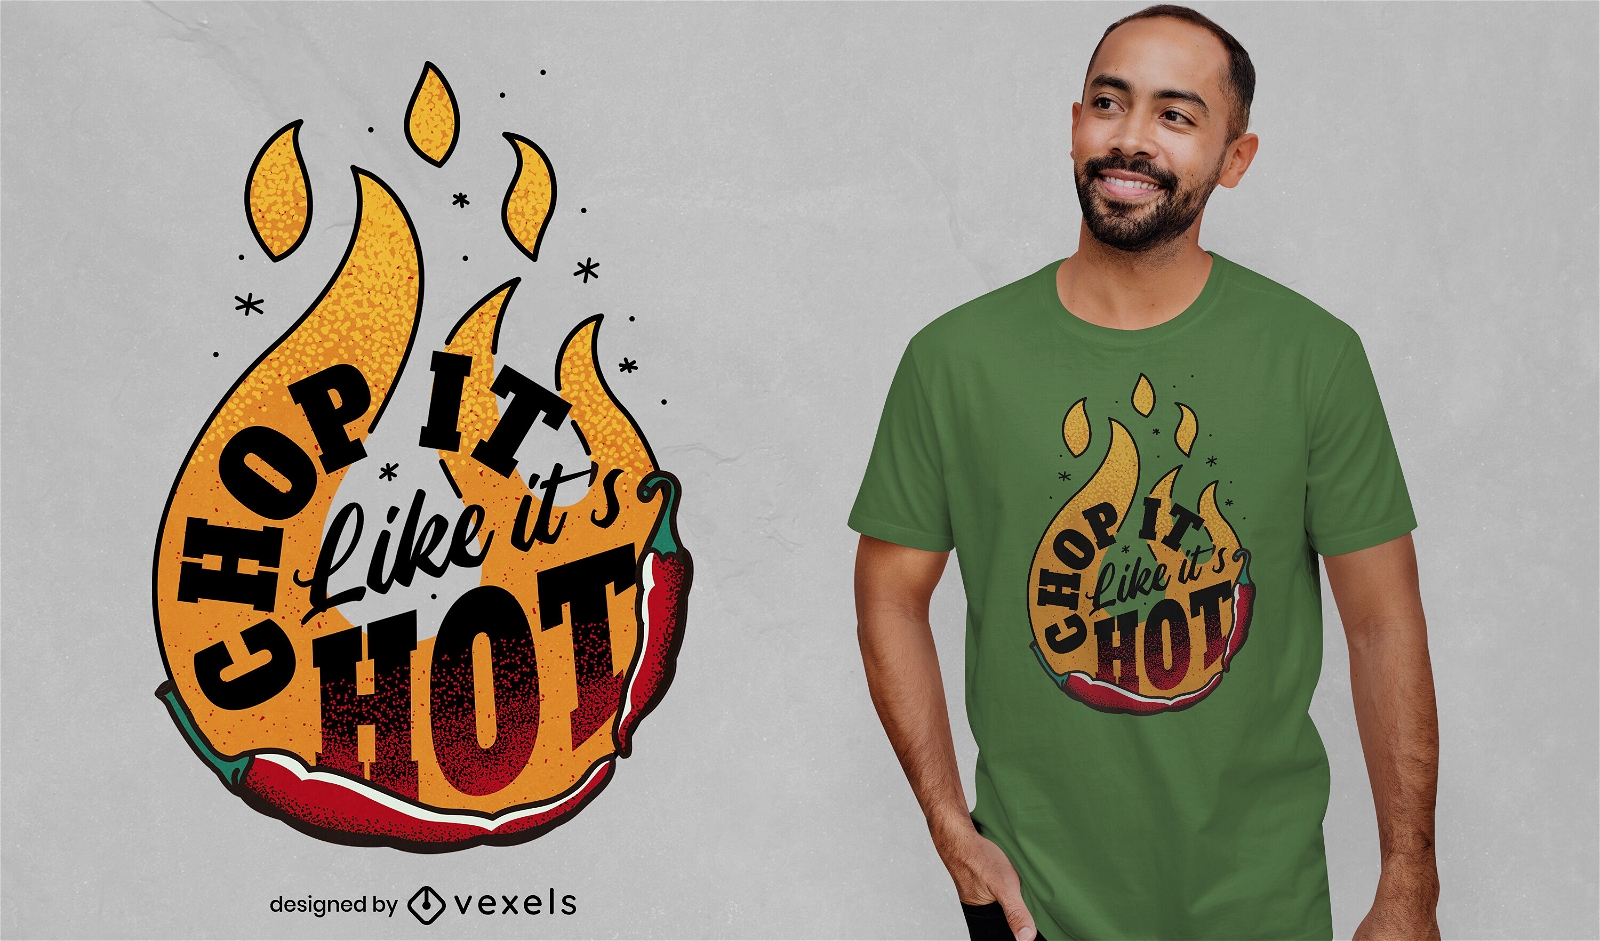 Hot Chili Kochen T-Shirt Design